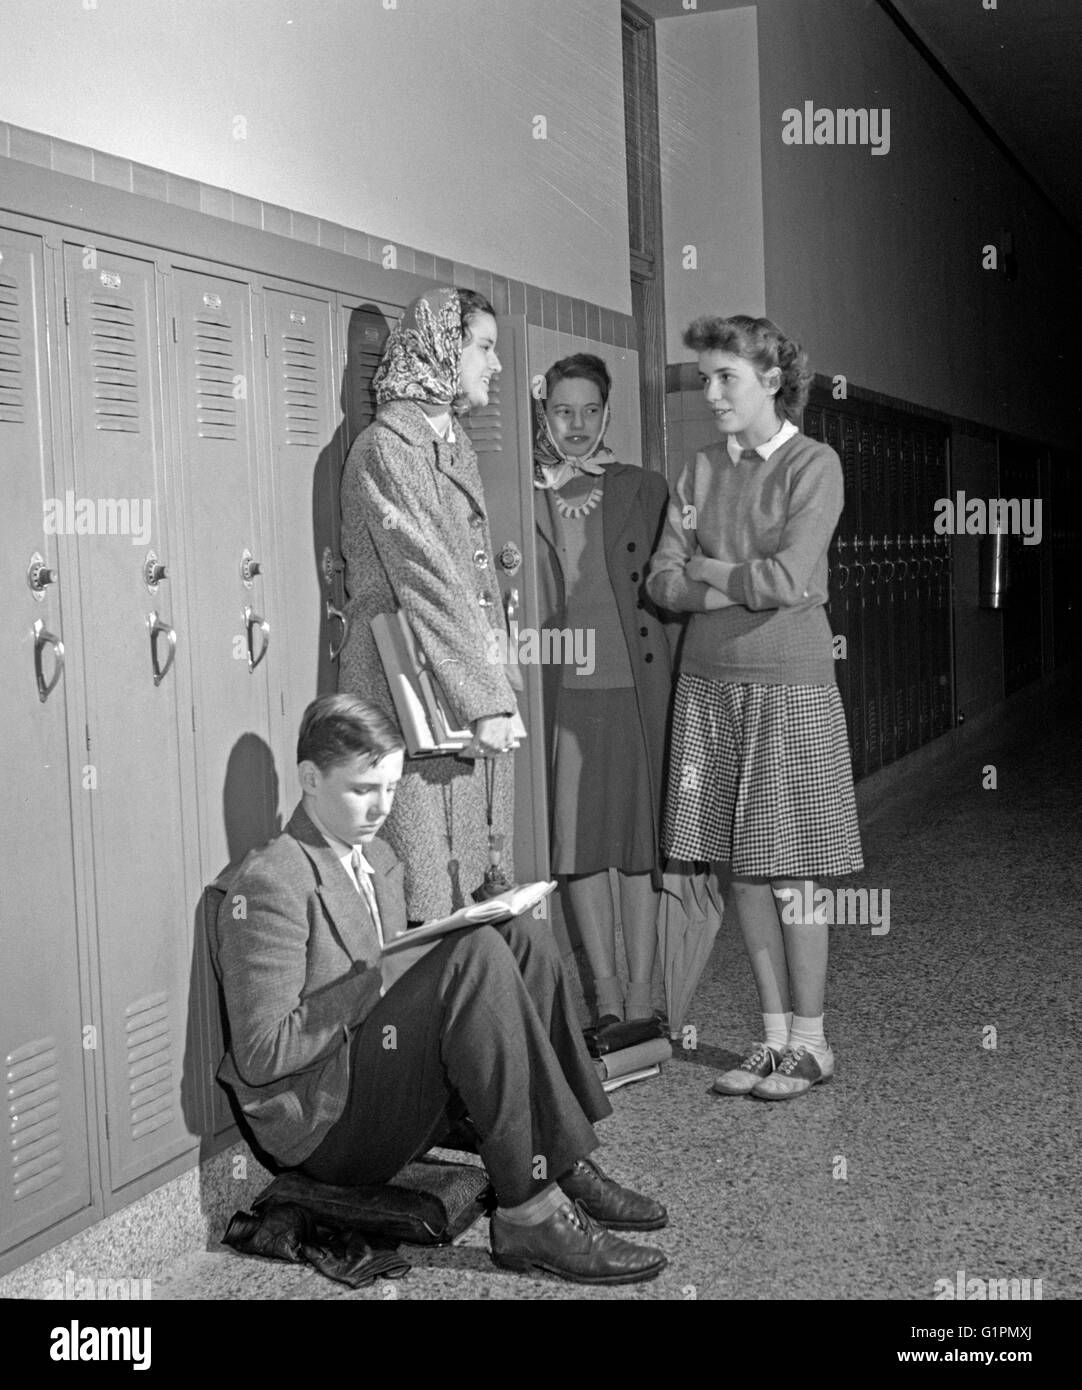 Los estudiantes de secundaria, en 1943. Los estudiantes de la Escuela Secundaria Woodrow Wilson en Washington, D.C. por Esther Bubley Fotografía, 1943. Foto de stock